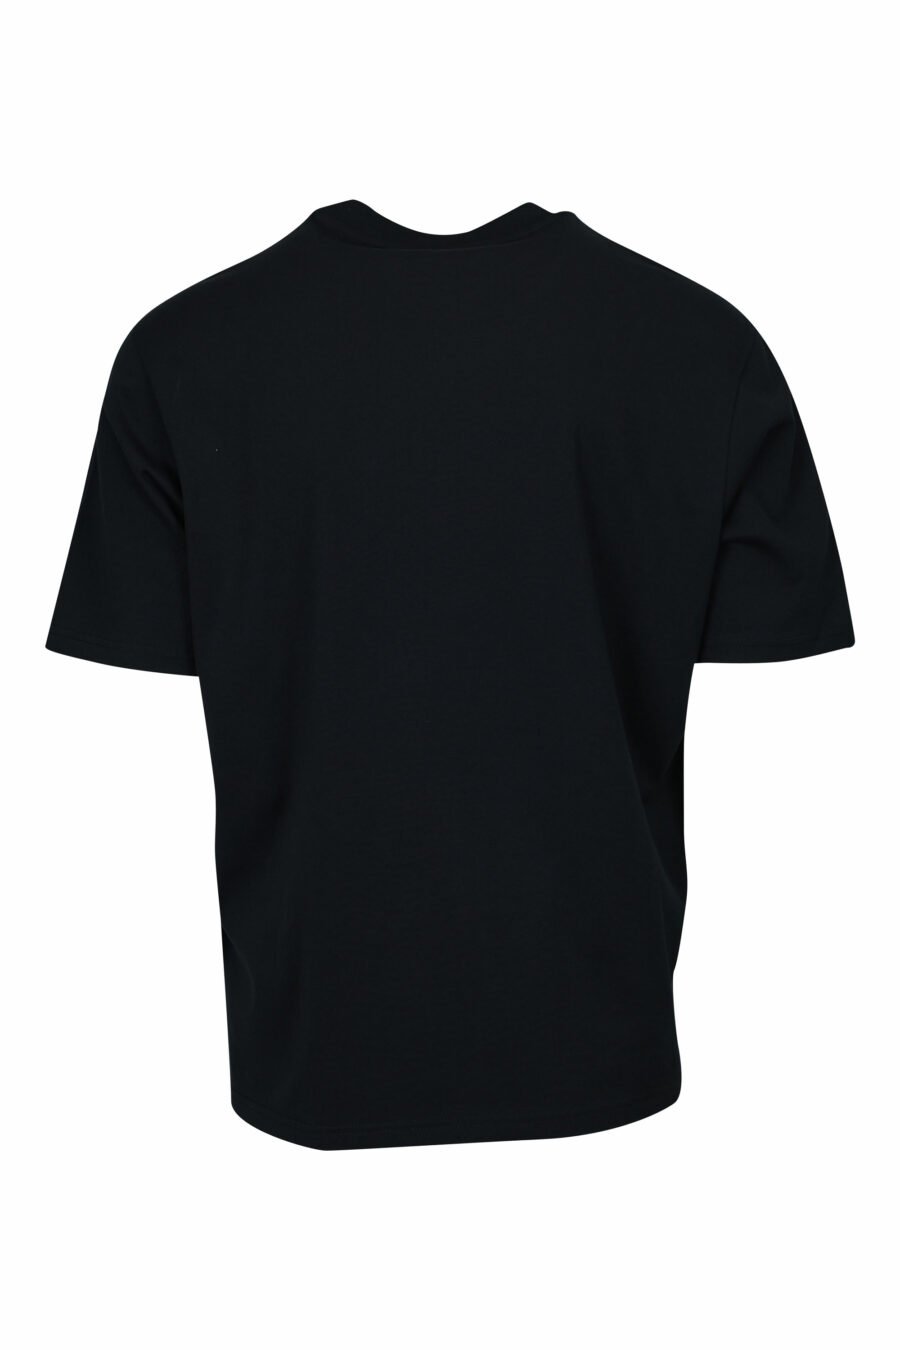 T-shirt noir avec imprimé feuilles et maxilogo "emporio" - 8058947296163 1